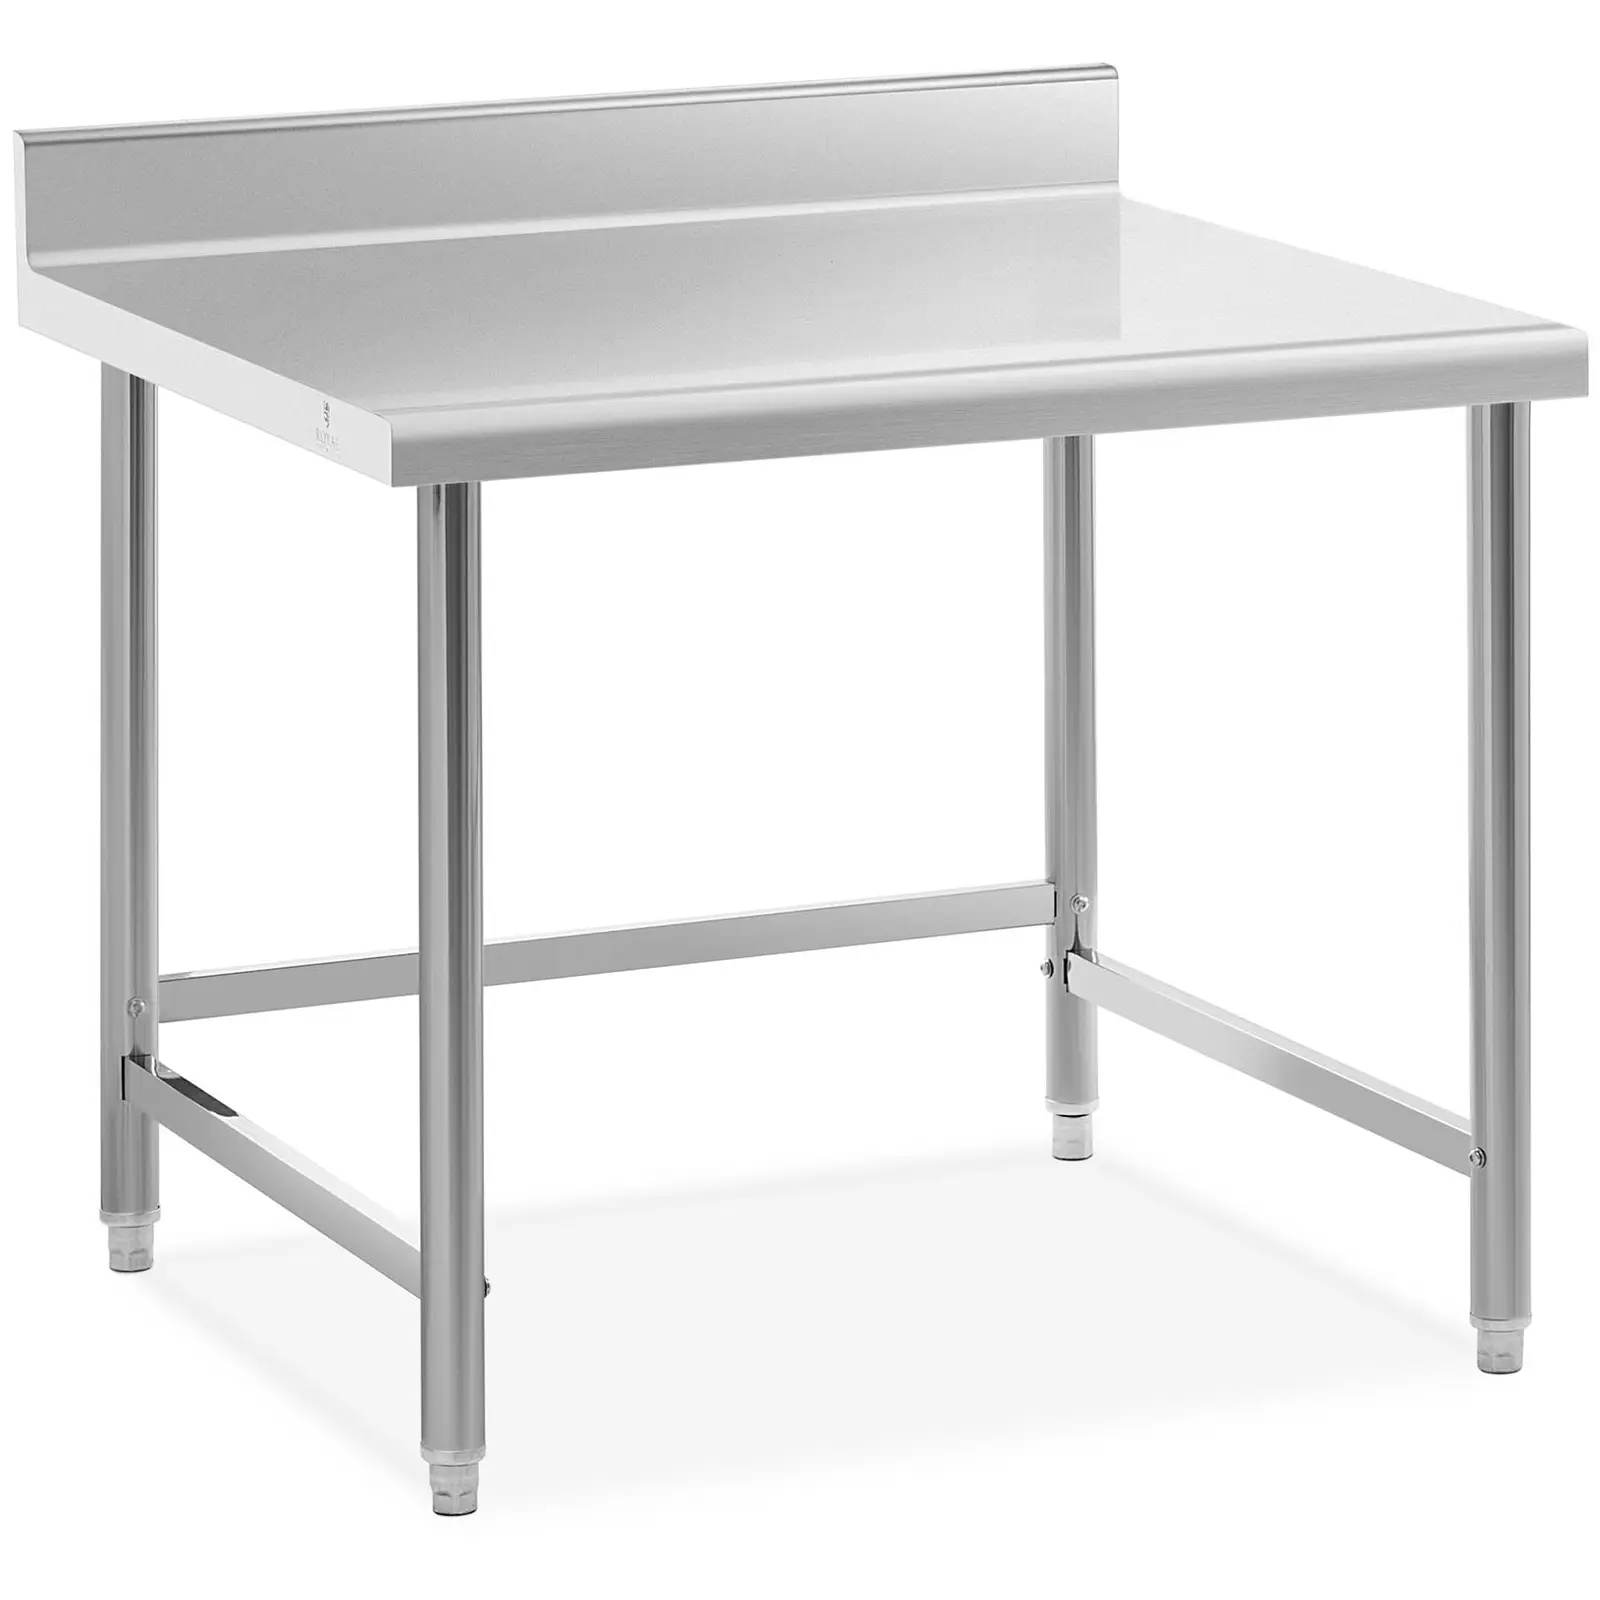 Pracovní stůl z ušlechtilé oceli 100 x 90 cm lem nosnost 93 kg - Pracovní stoly Royal Catering